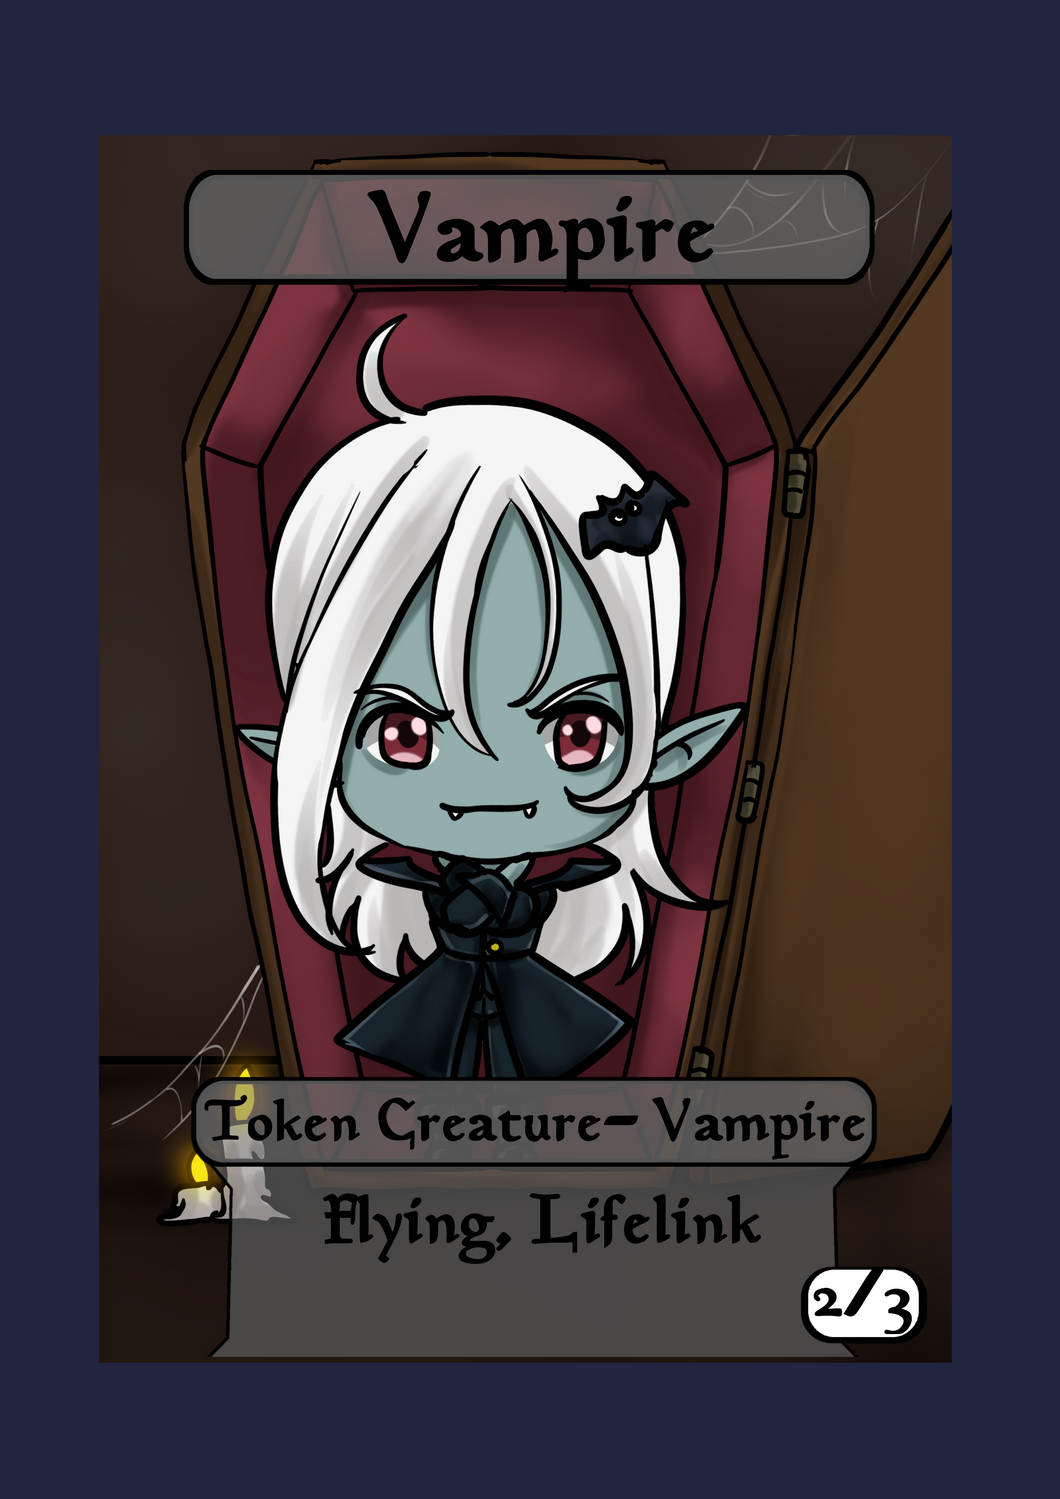 Vampire 2/3 w/ Flying and Lifelink Token